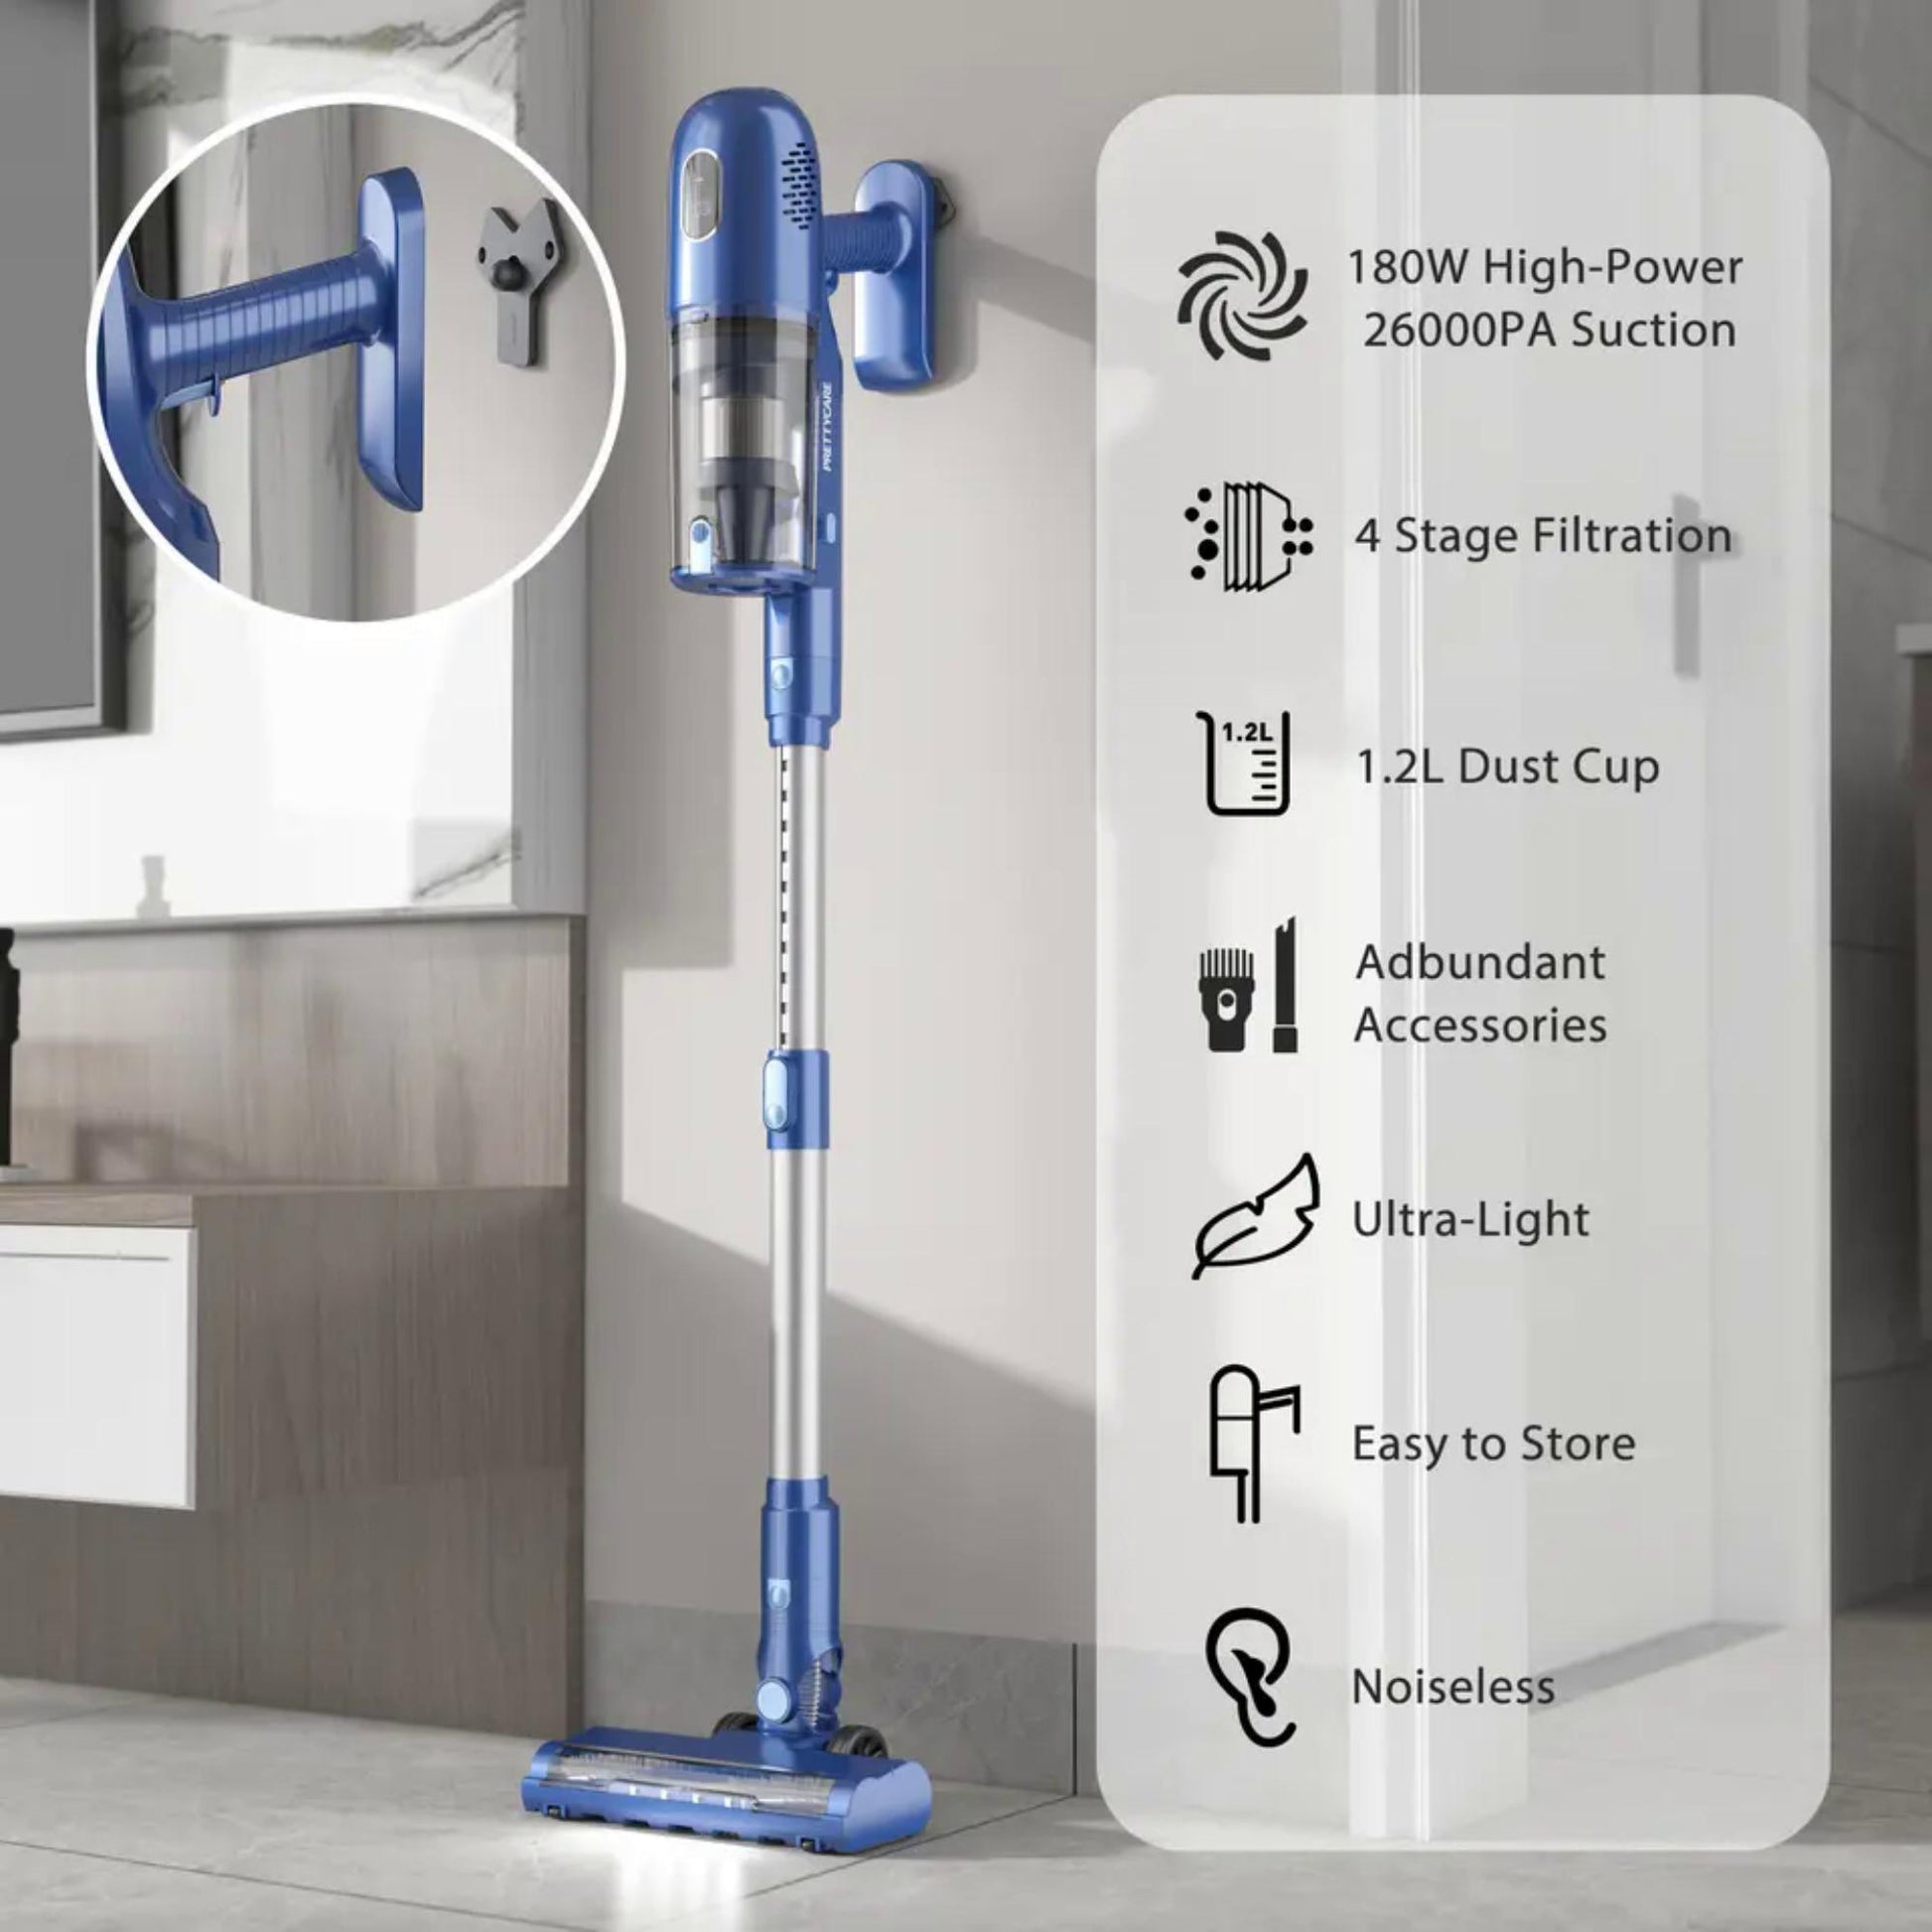 Pretty Care P1 Cordless Stick Vacuum Cleaner mit vielseitiger Laufzeit: 18-40 Minuten für ununterbrochene Nutzung. | Blue Chilli Electronics.